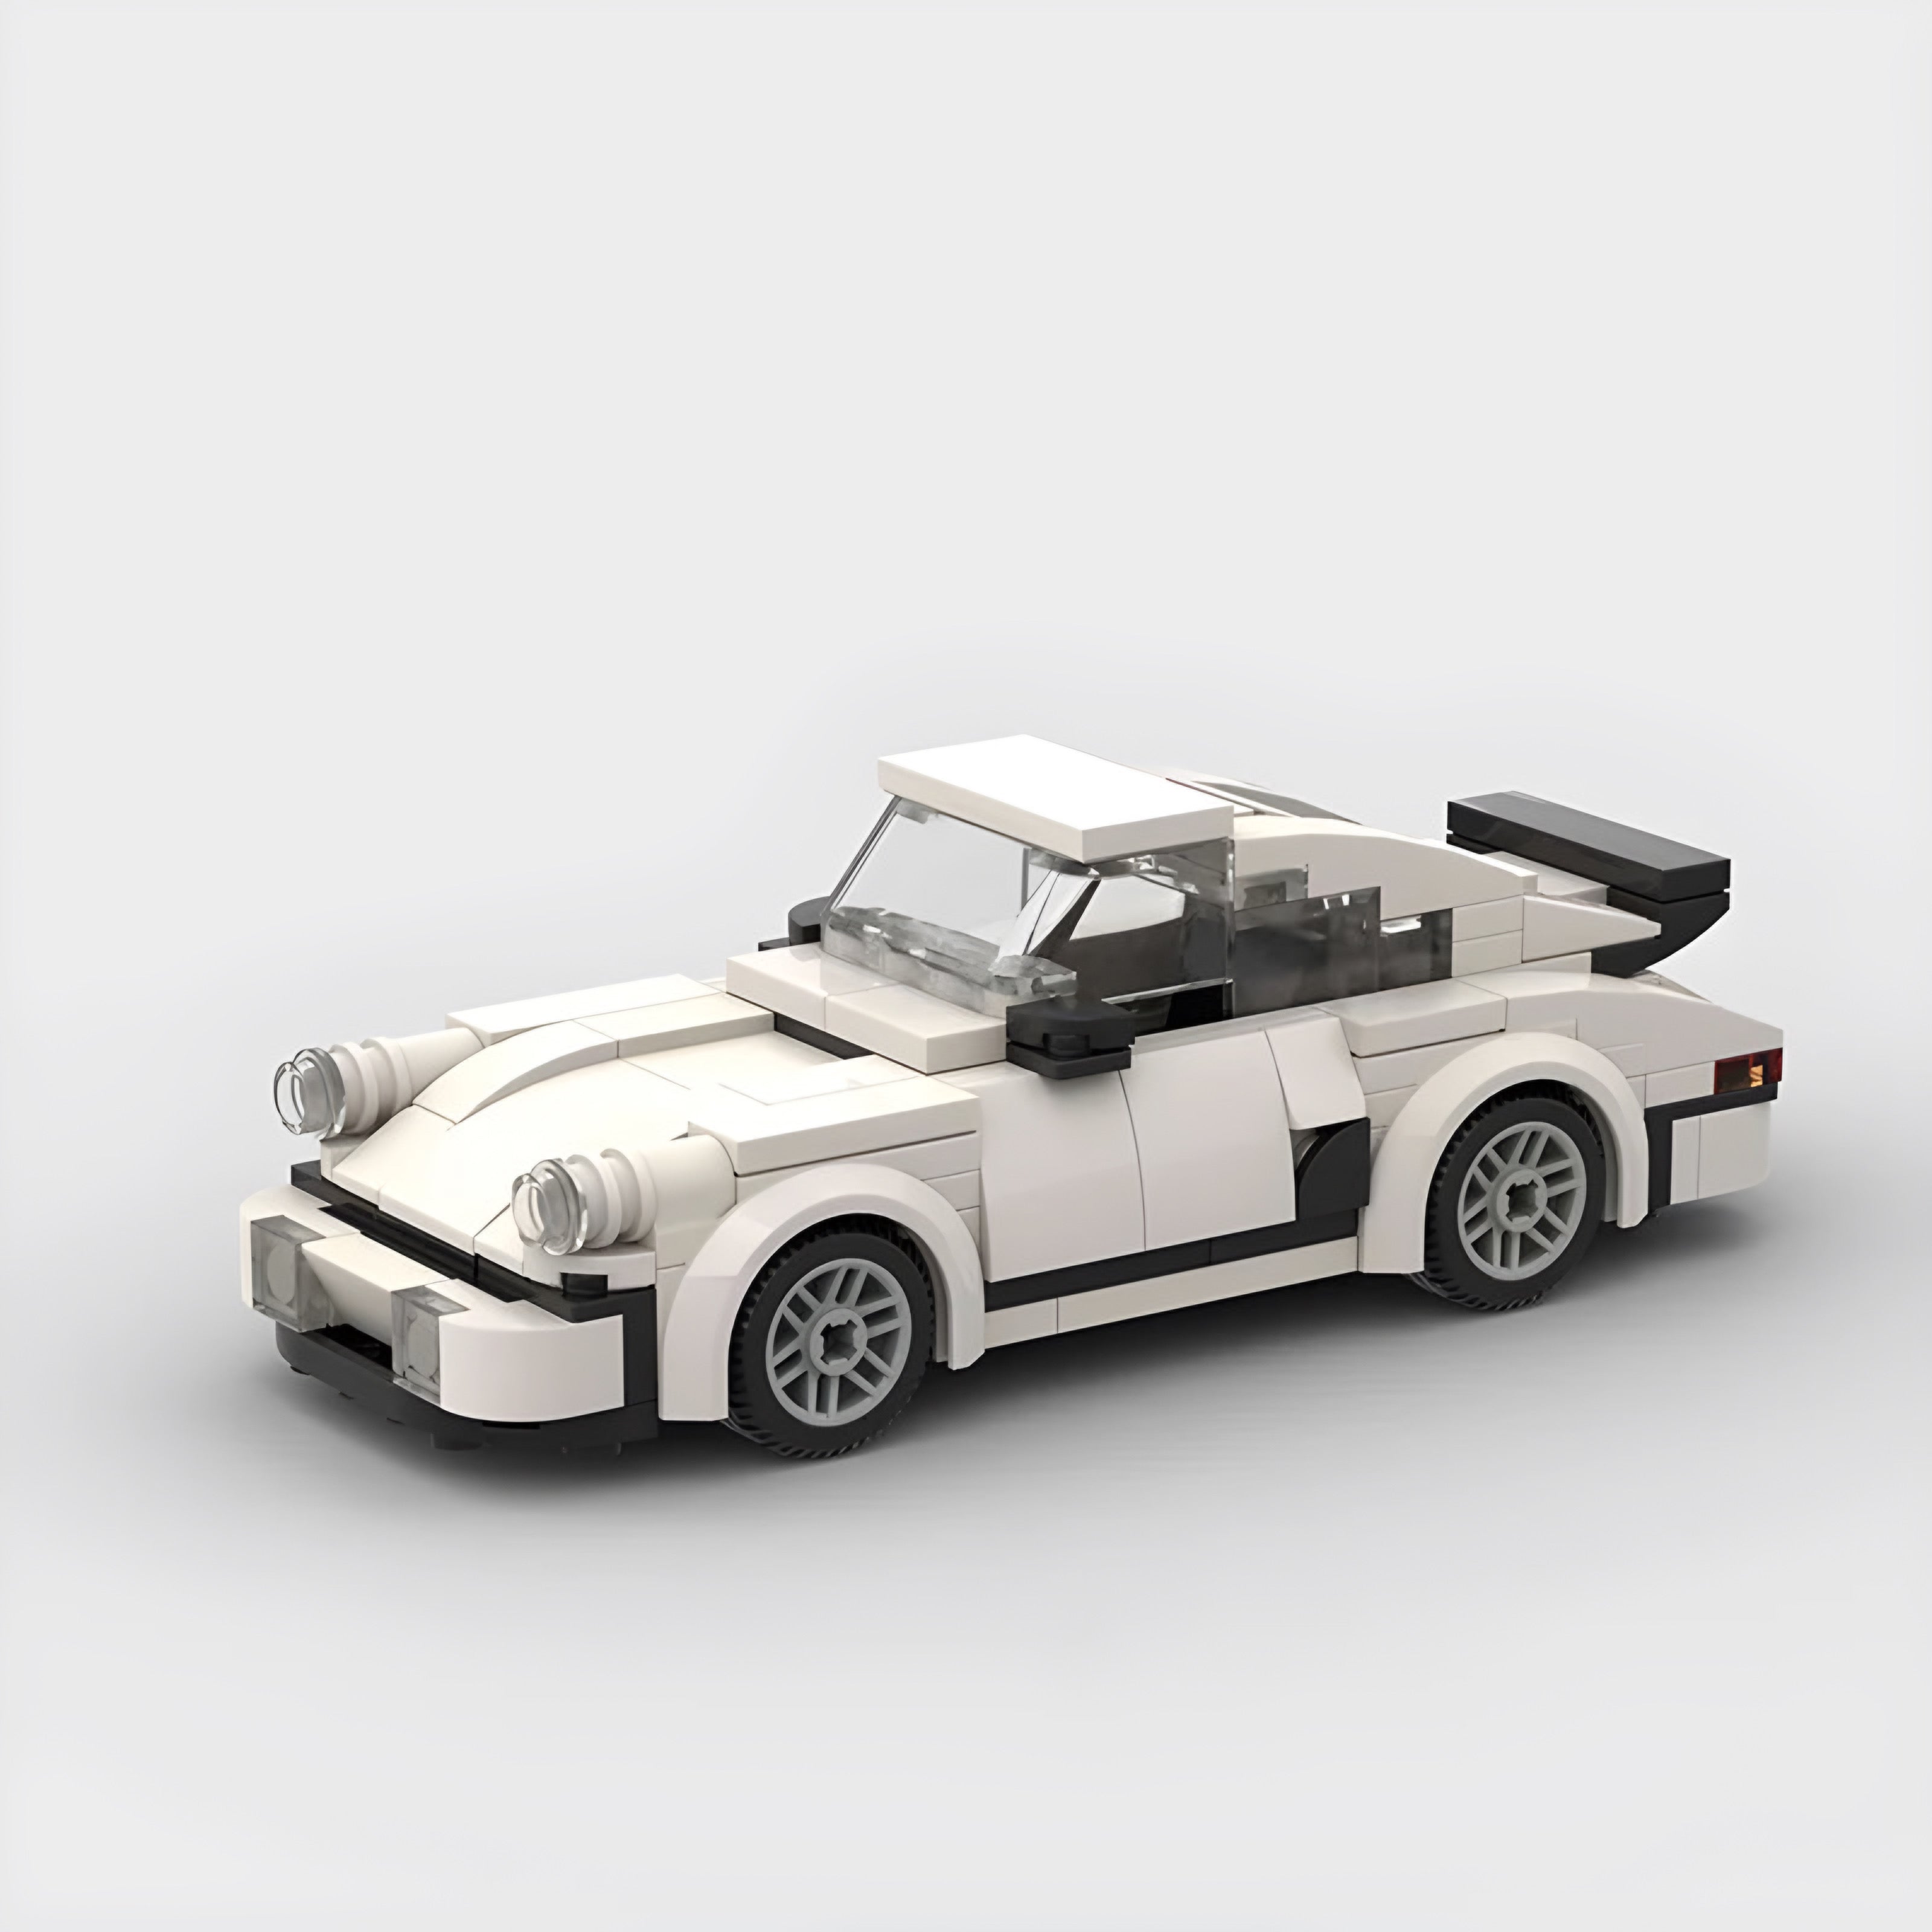 Porsche 911 - Brick Set